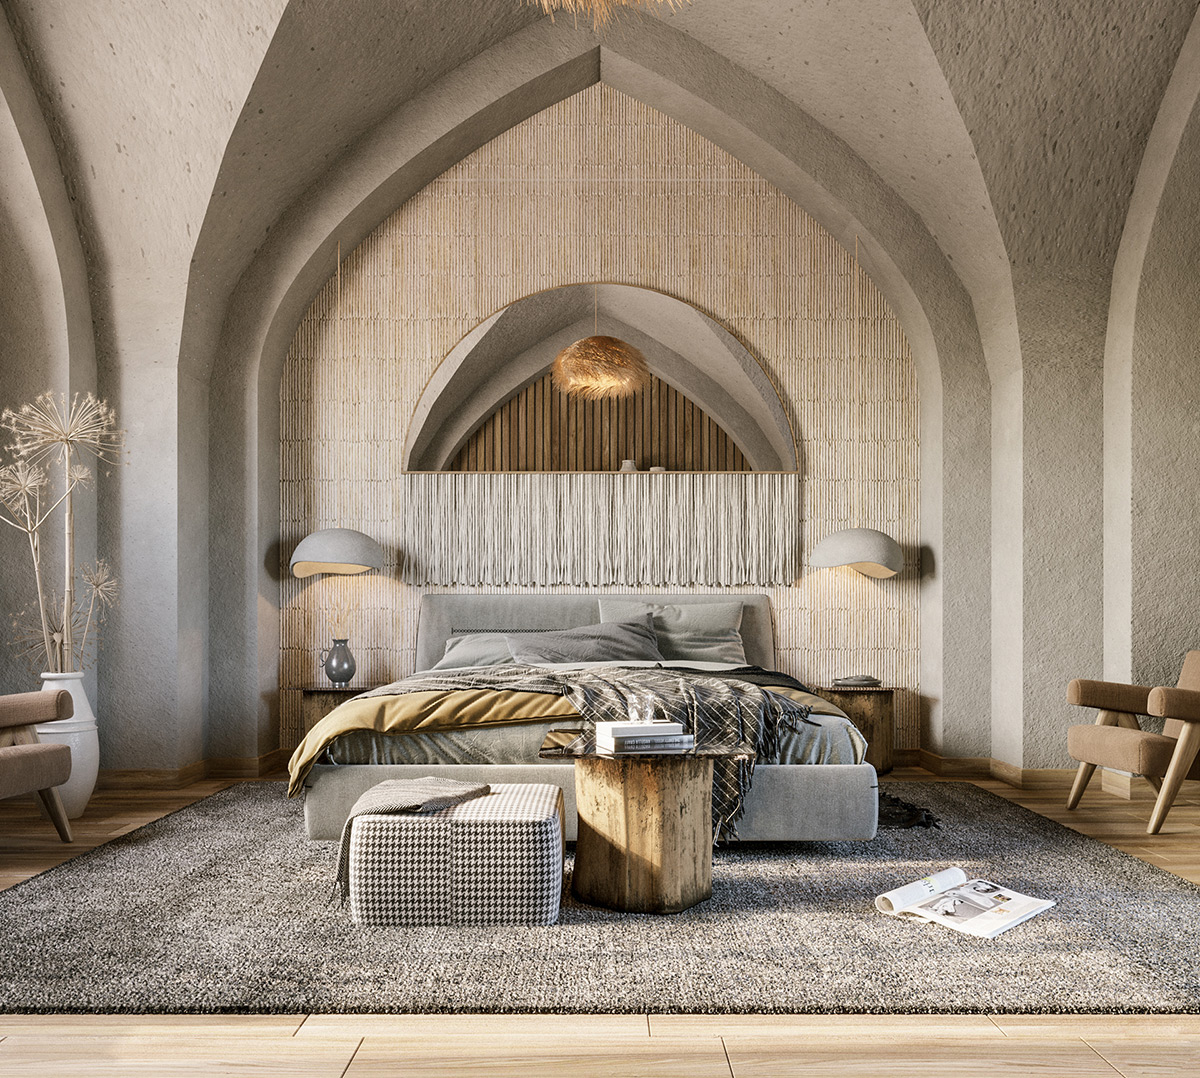 51 идея дизайна спальни, которые слаще мечты — Полезная информация